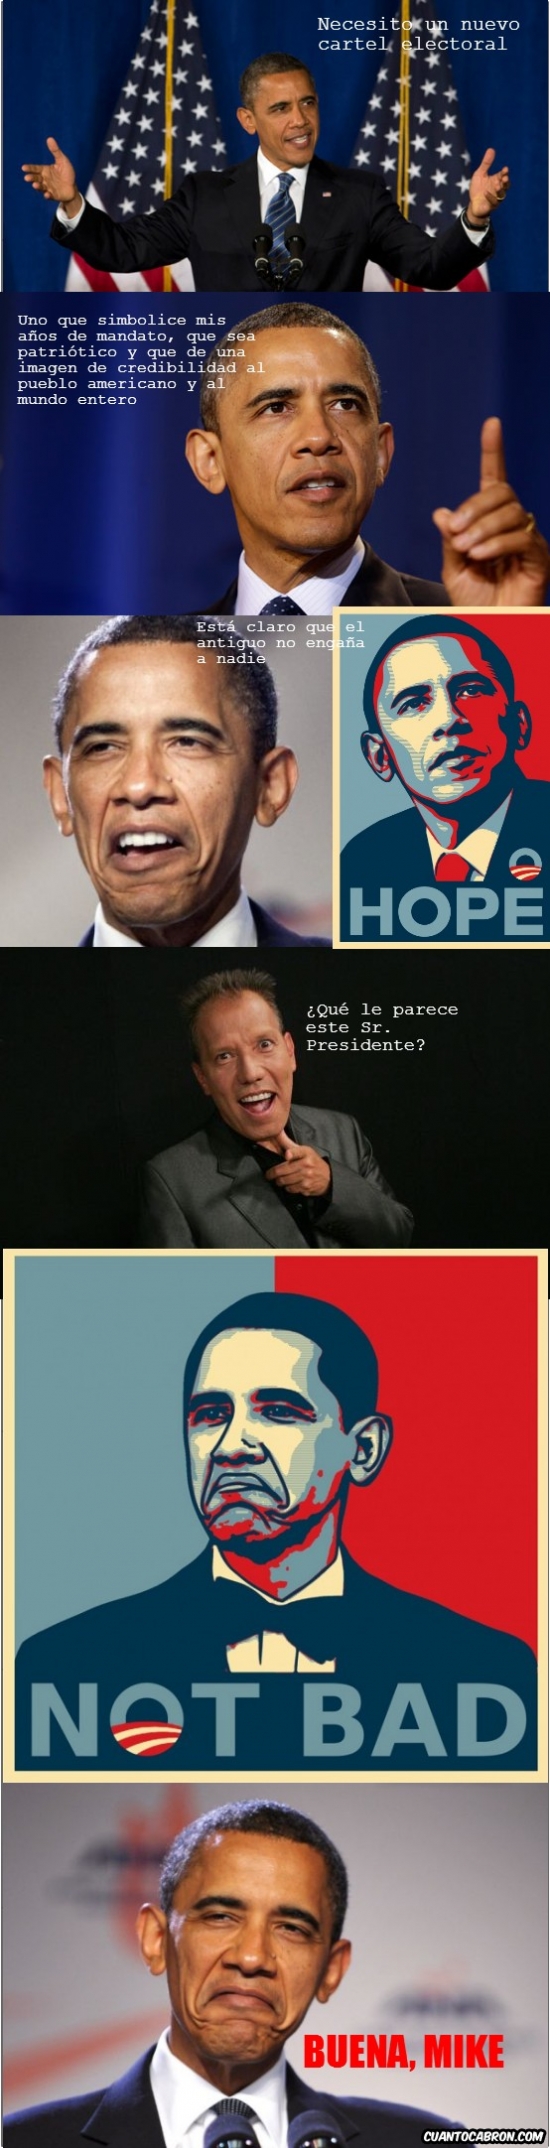 buena mike,cartel electoral,elecciones,not bad,obama